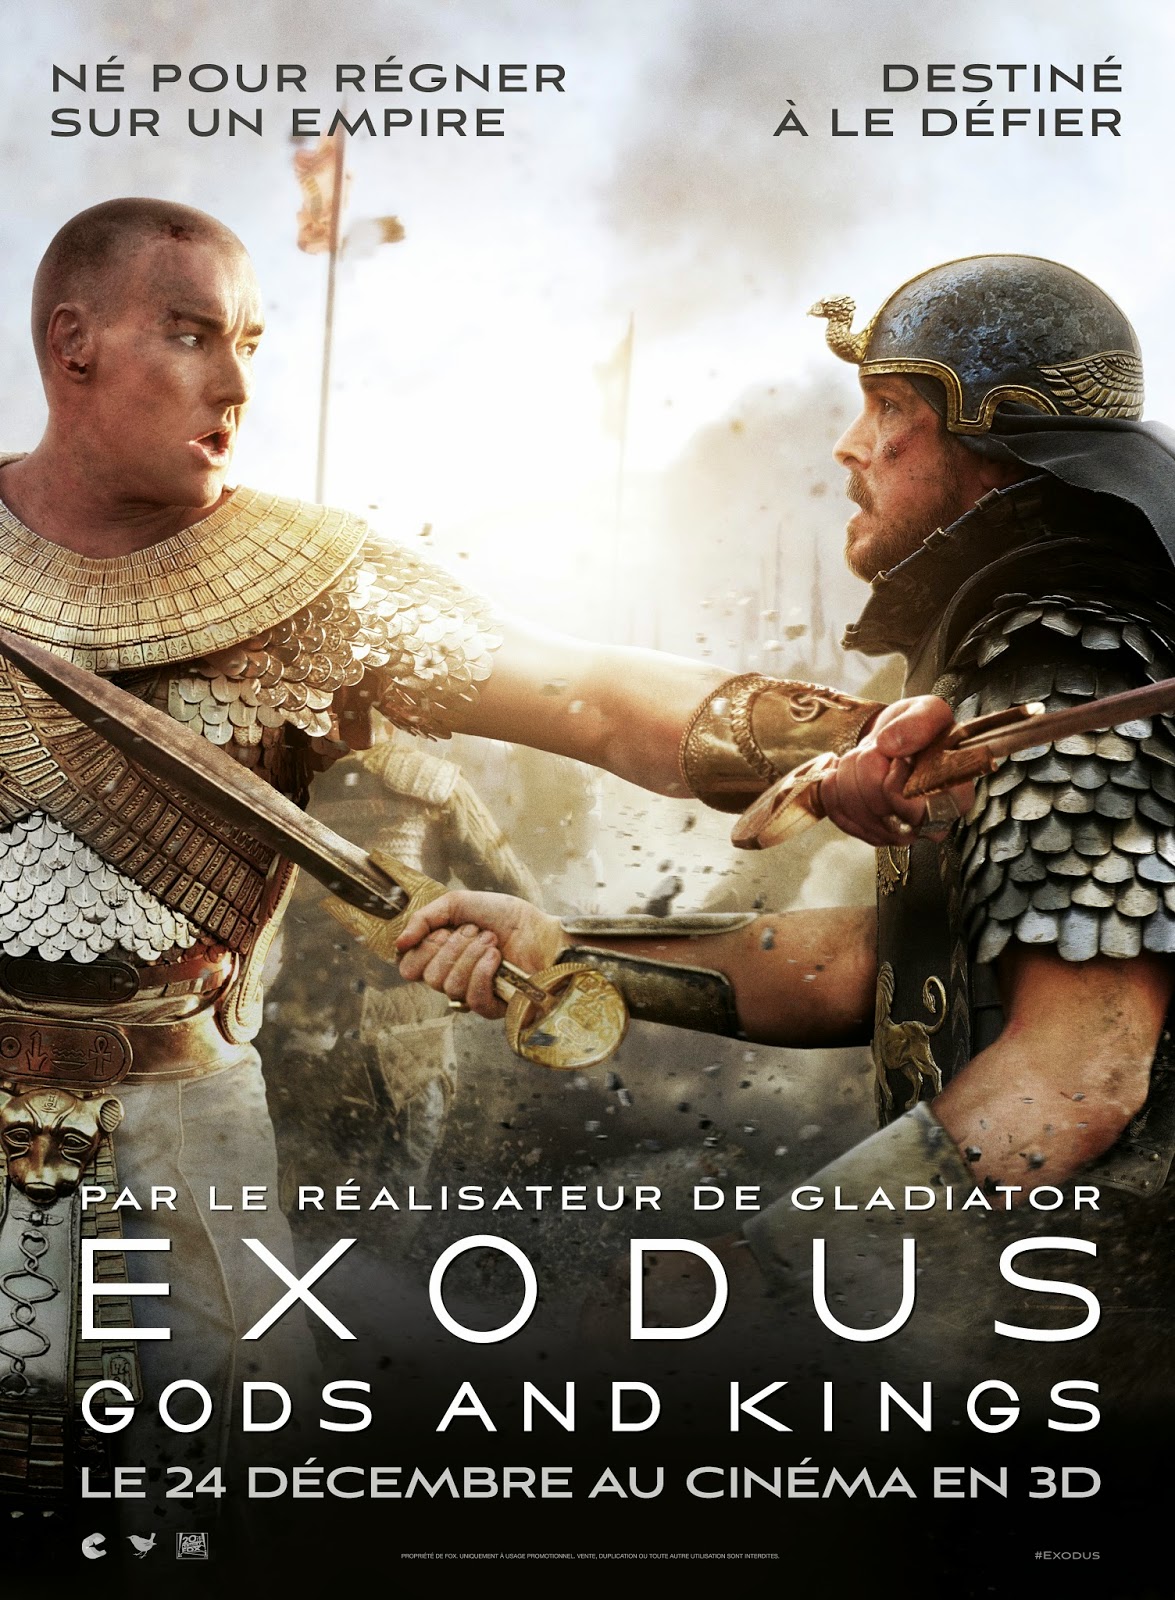 [Critique] "Exodus: Gods And Kings" (2014) : Des hommes et des dieux 1 image